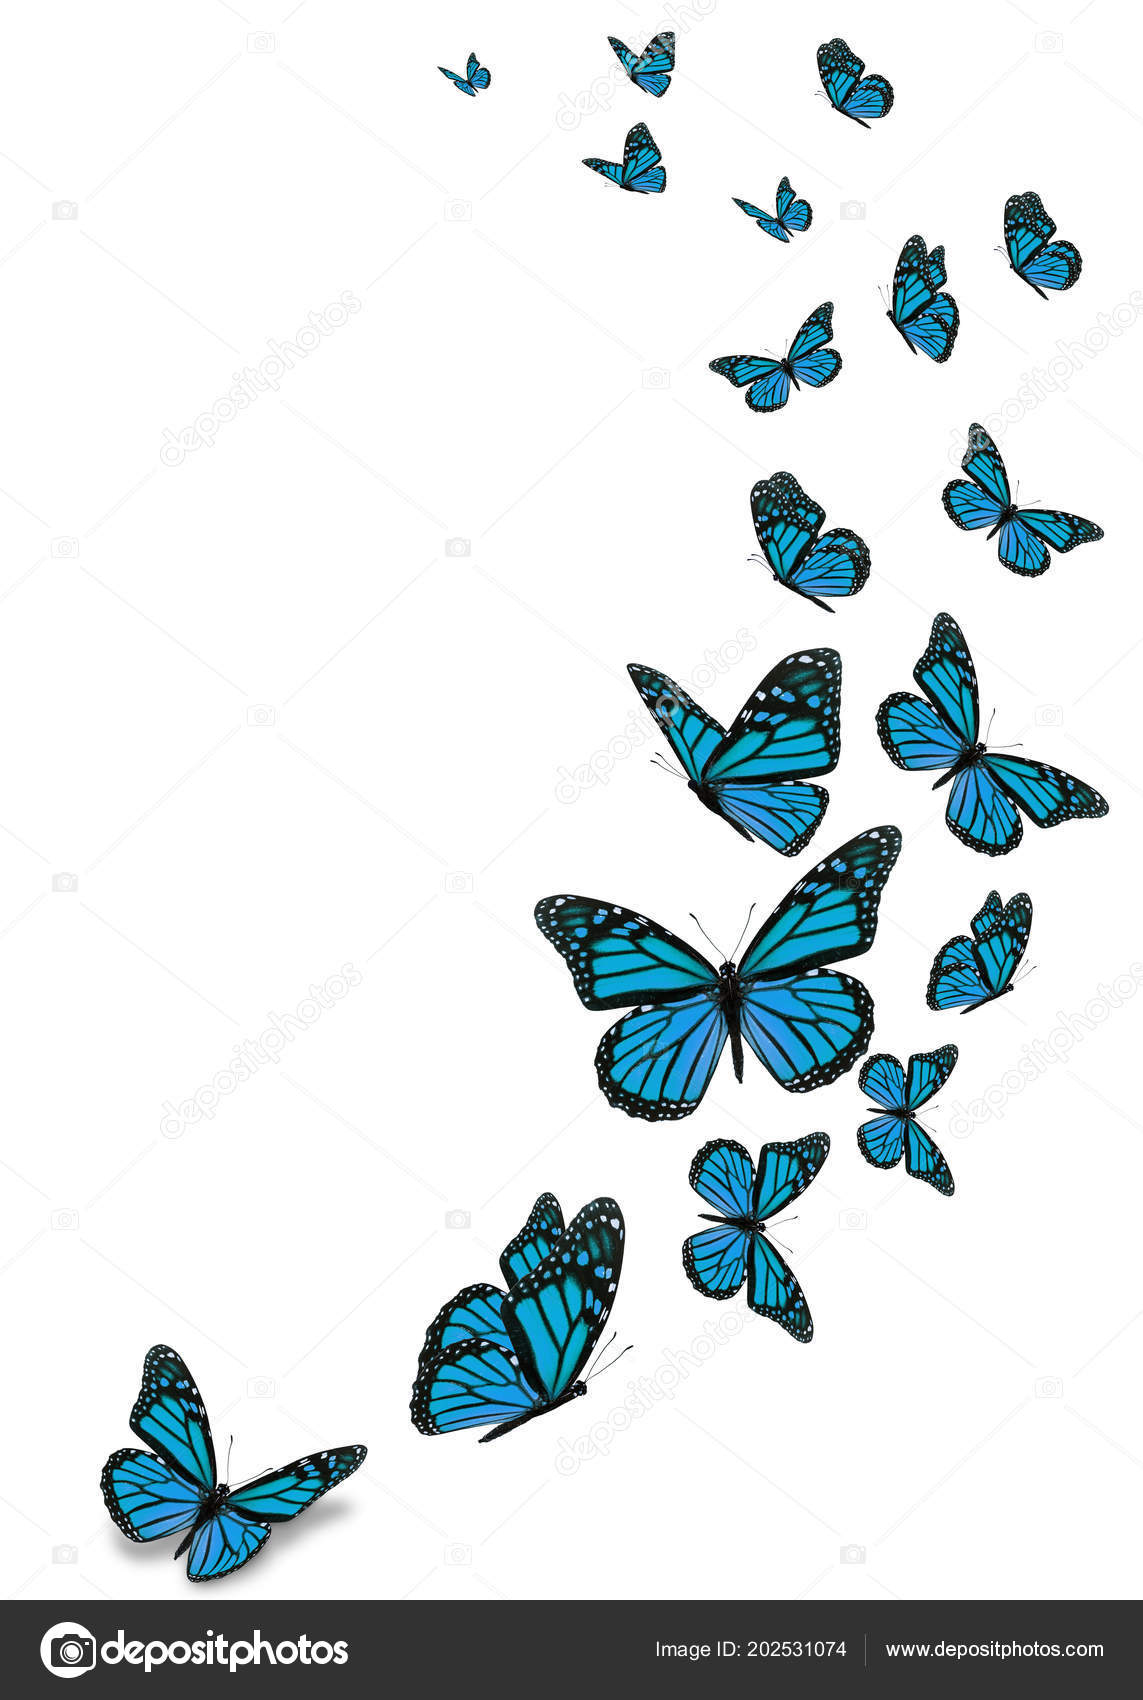 Bướm là loài côn trùng biểu tượng cho sự đổi lật và sự hóa thân. Trong văn hóa Á Đông, nó thể hiện sự đổi mới và sự phục hồi của đạo. Hình ảnh đẹp của bướm mang lại sự yên bình và cảm giác hạnh phúc cho tâm trí của chúng ta. Hãy tìm thấy những bức ảnh bướm để tìm thấy sự hy vọng và sự mới mẻ trong cuộc sống.